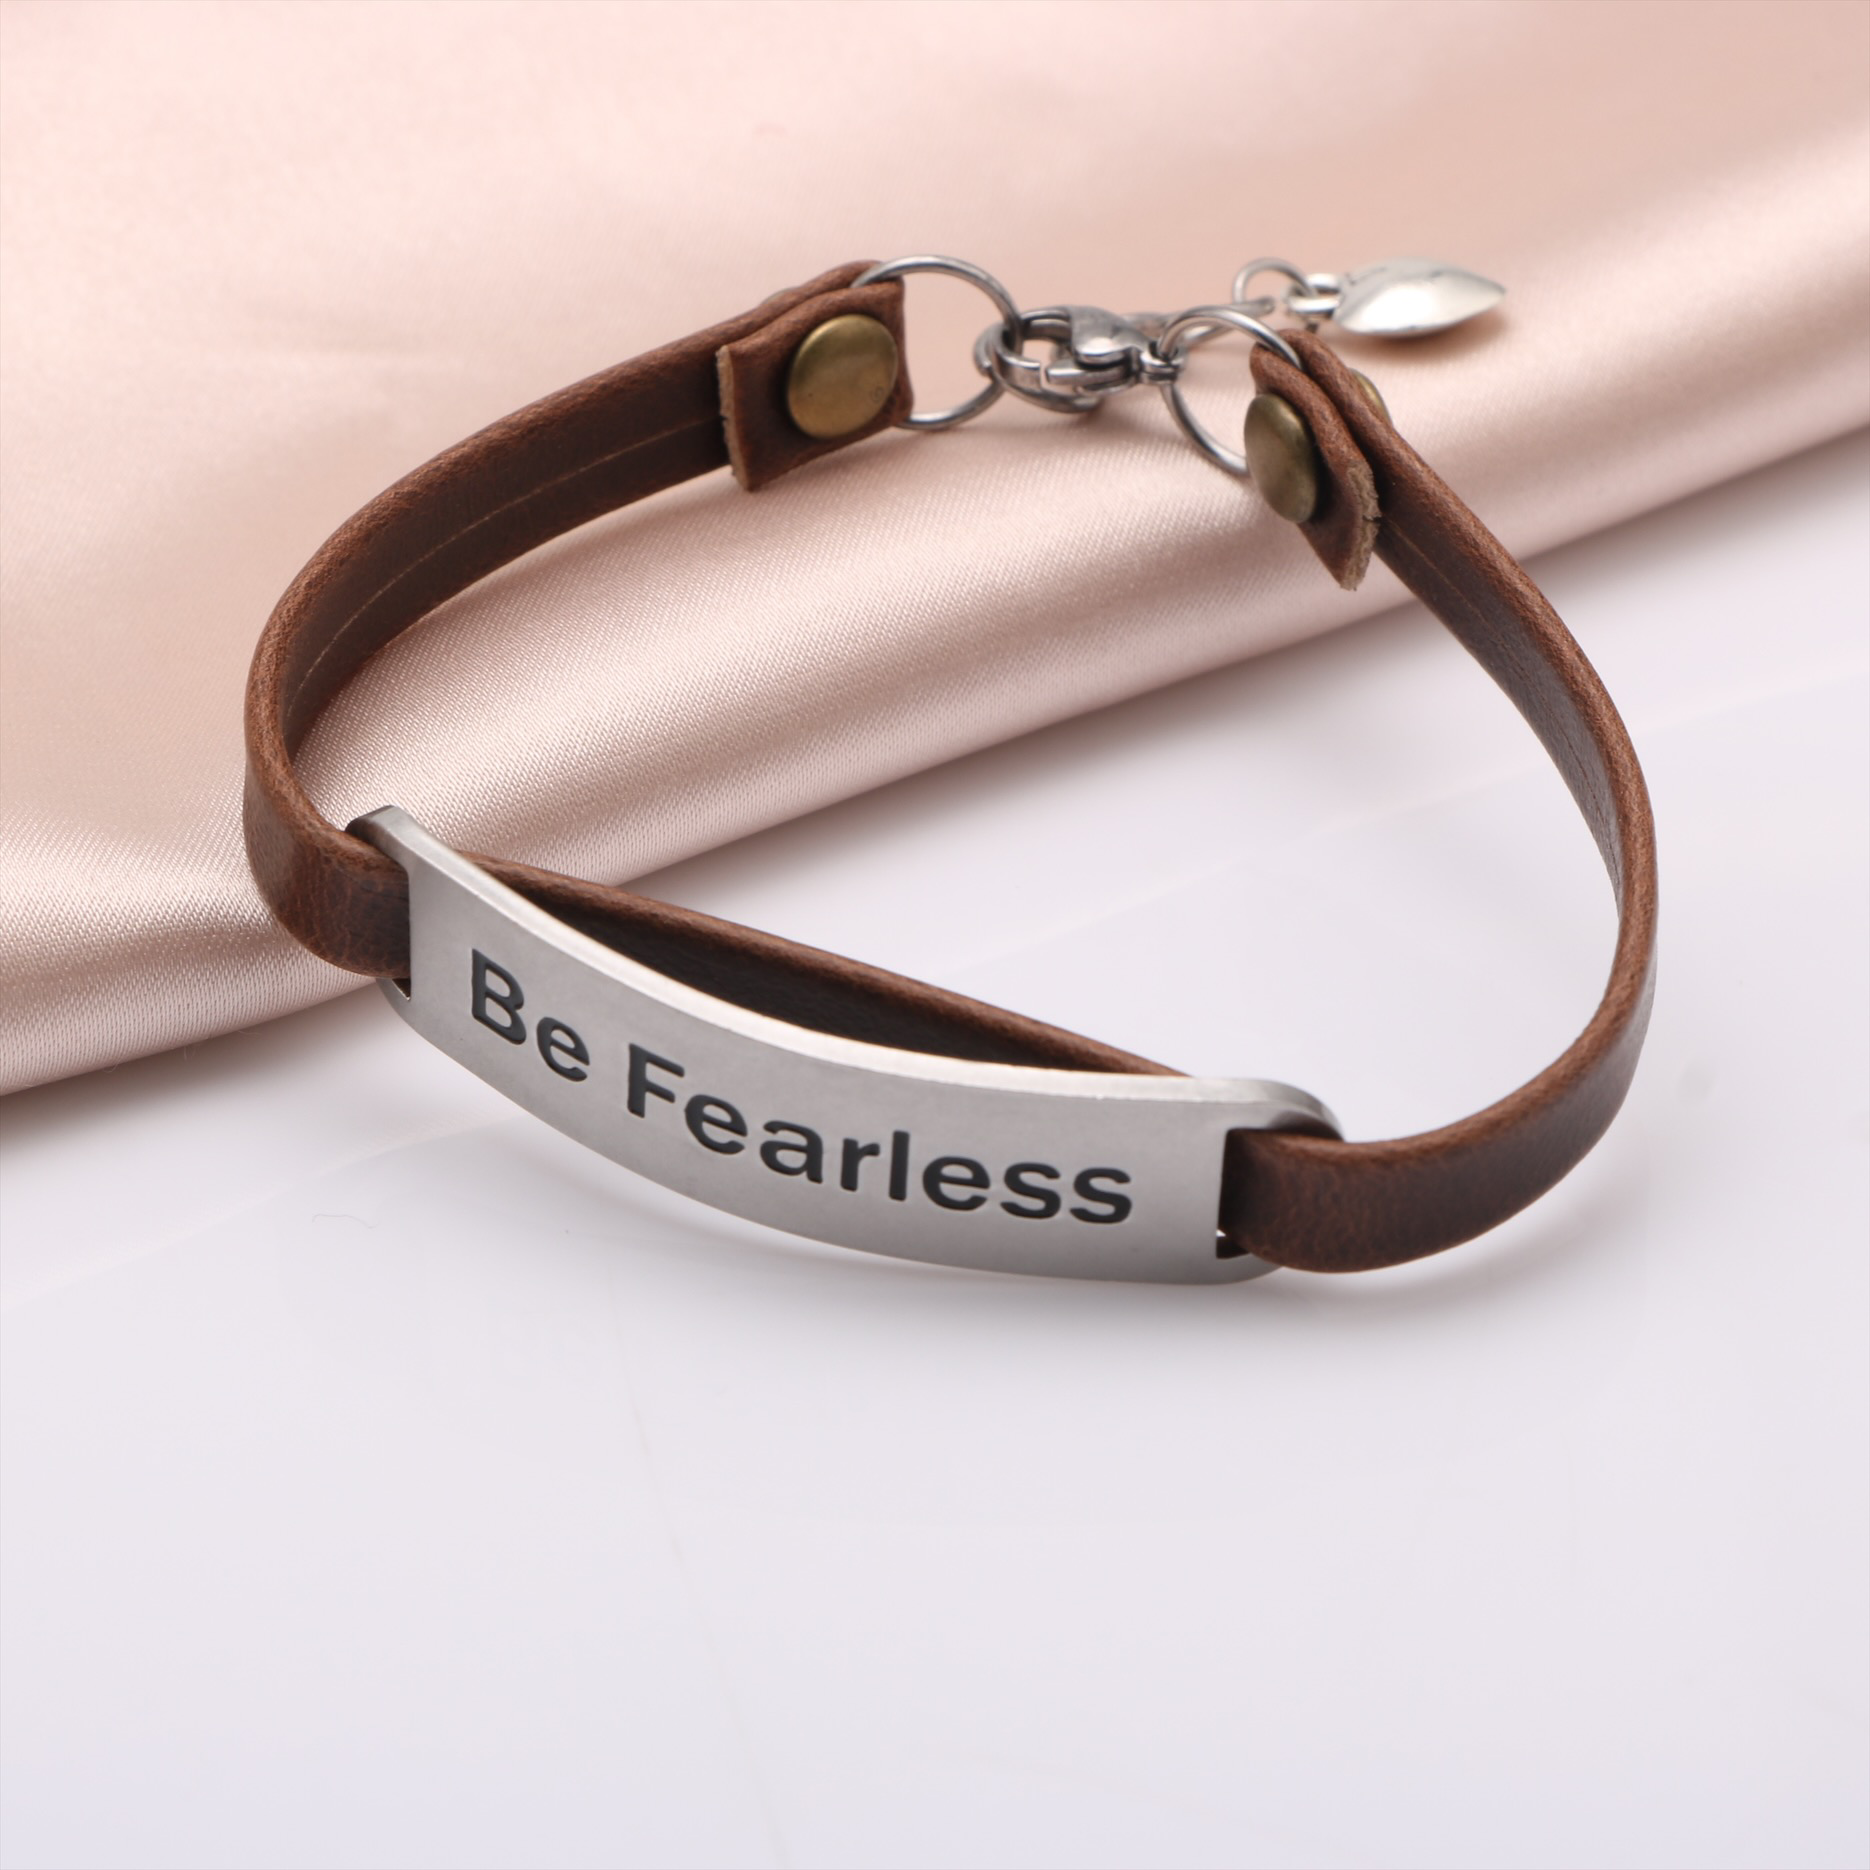 Be Fearless Affirmation Bracelet